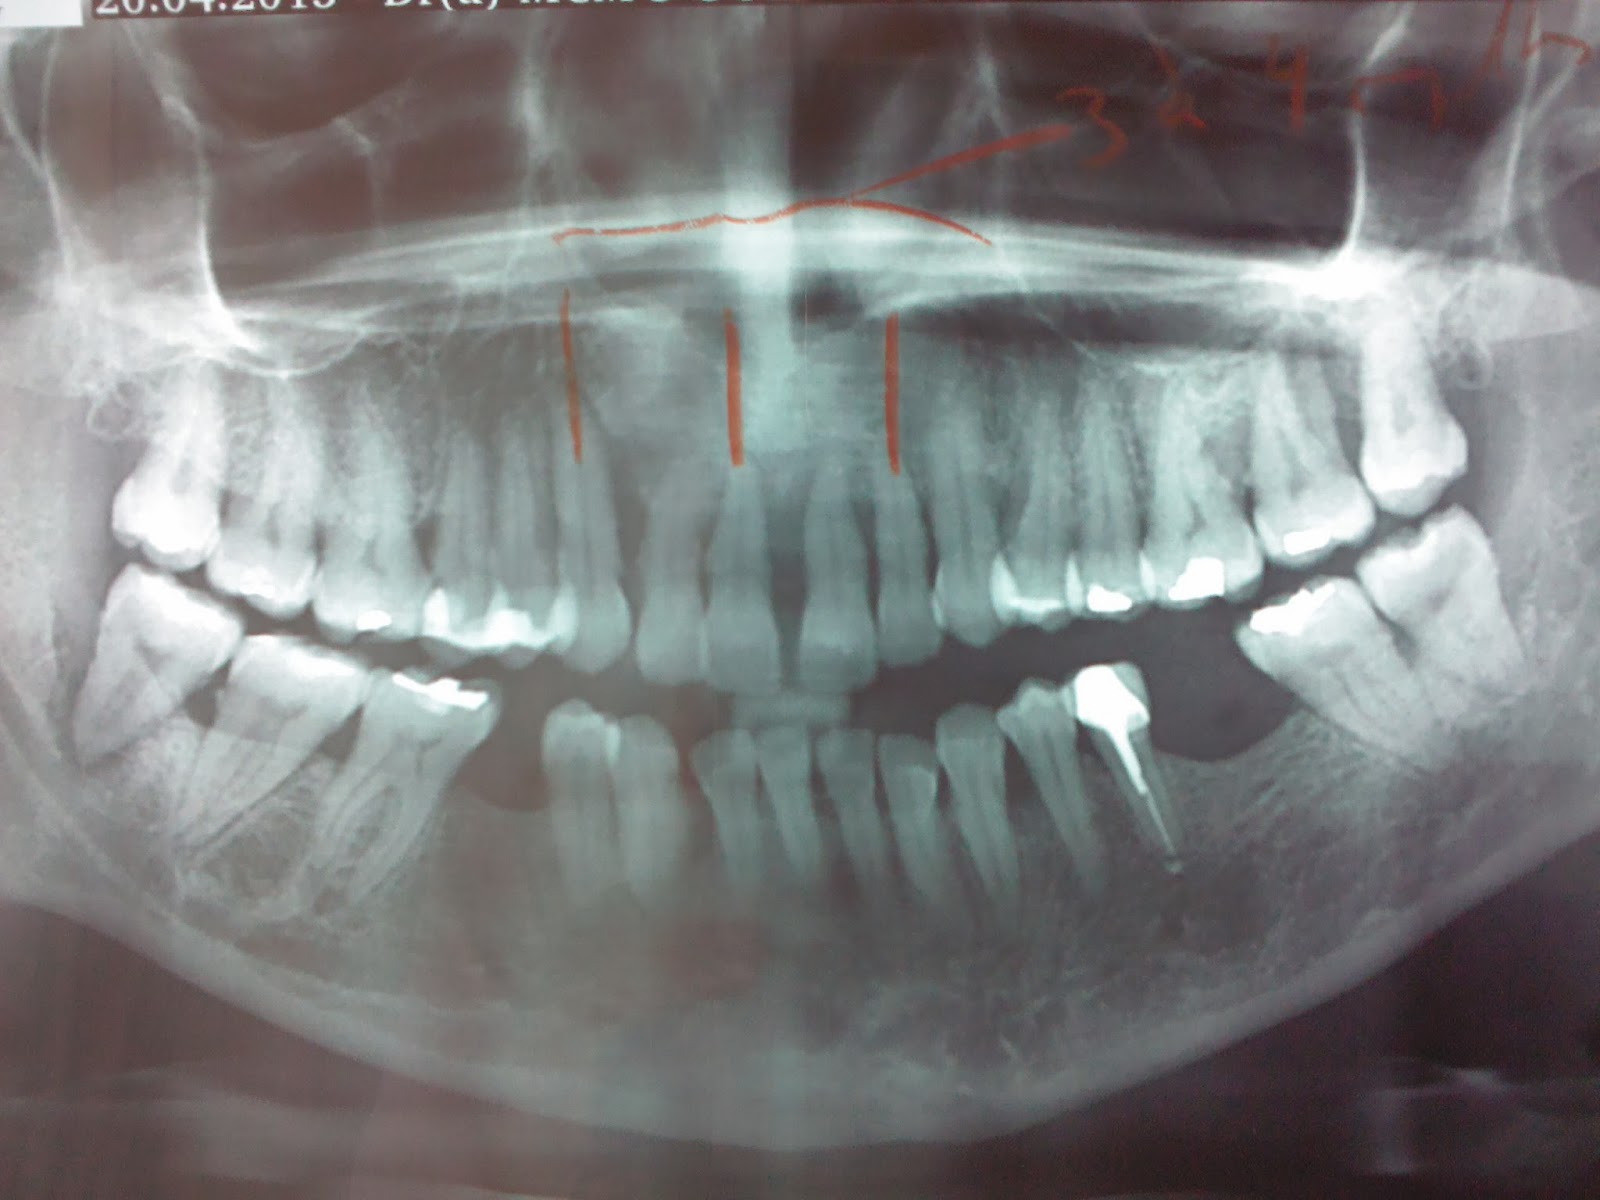 جزء من أدوات الكشف تعرف على أنواع وفوائد أشعة البانوراما للأسنان صوت الأمة